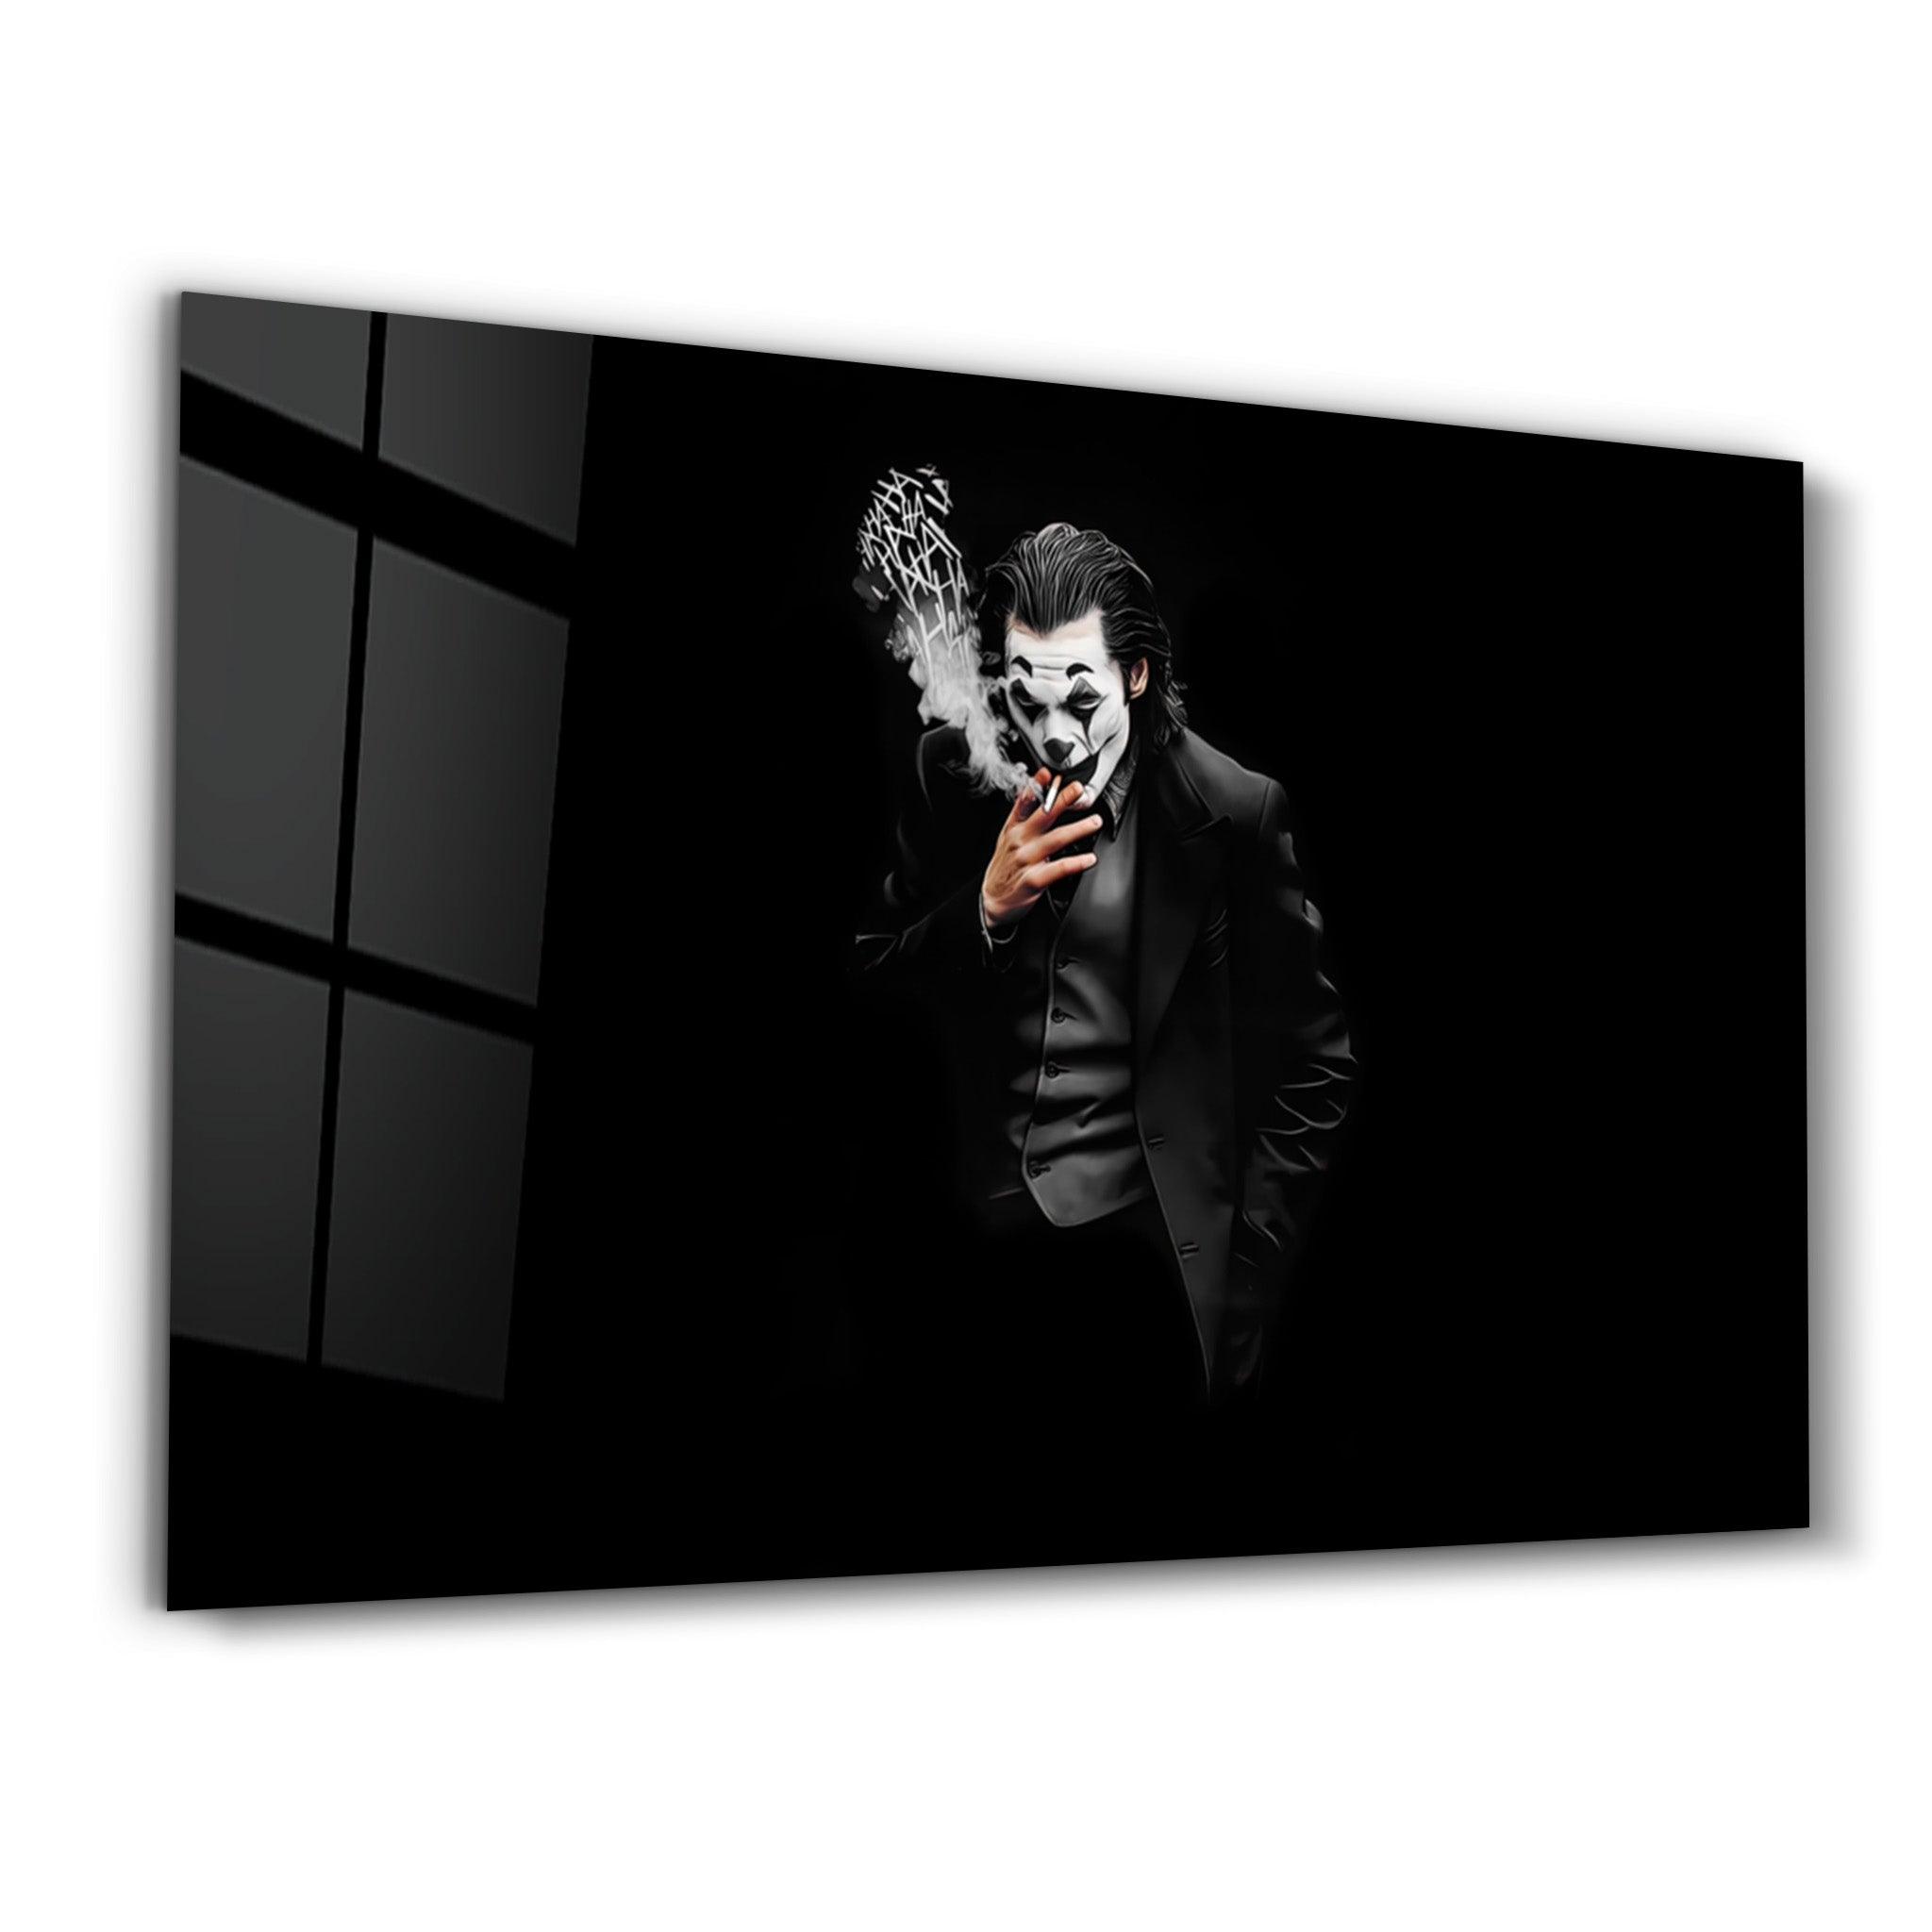 Joker - Haha | Designer's Collection Glass Wall Art - ArtDesigna Glass Printing Wall Art